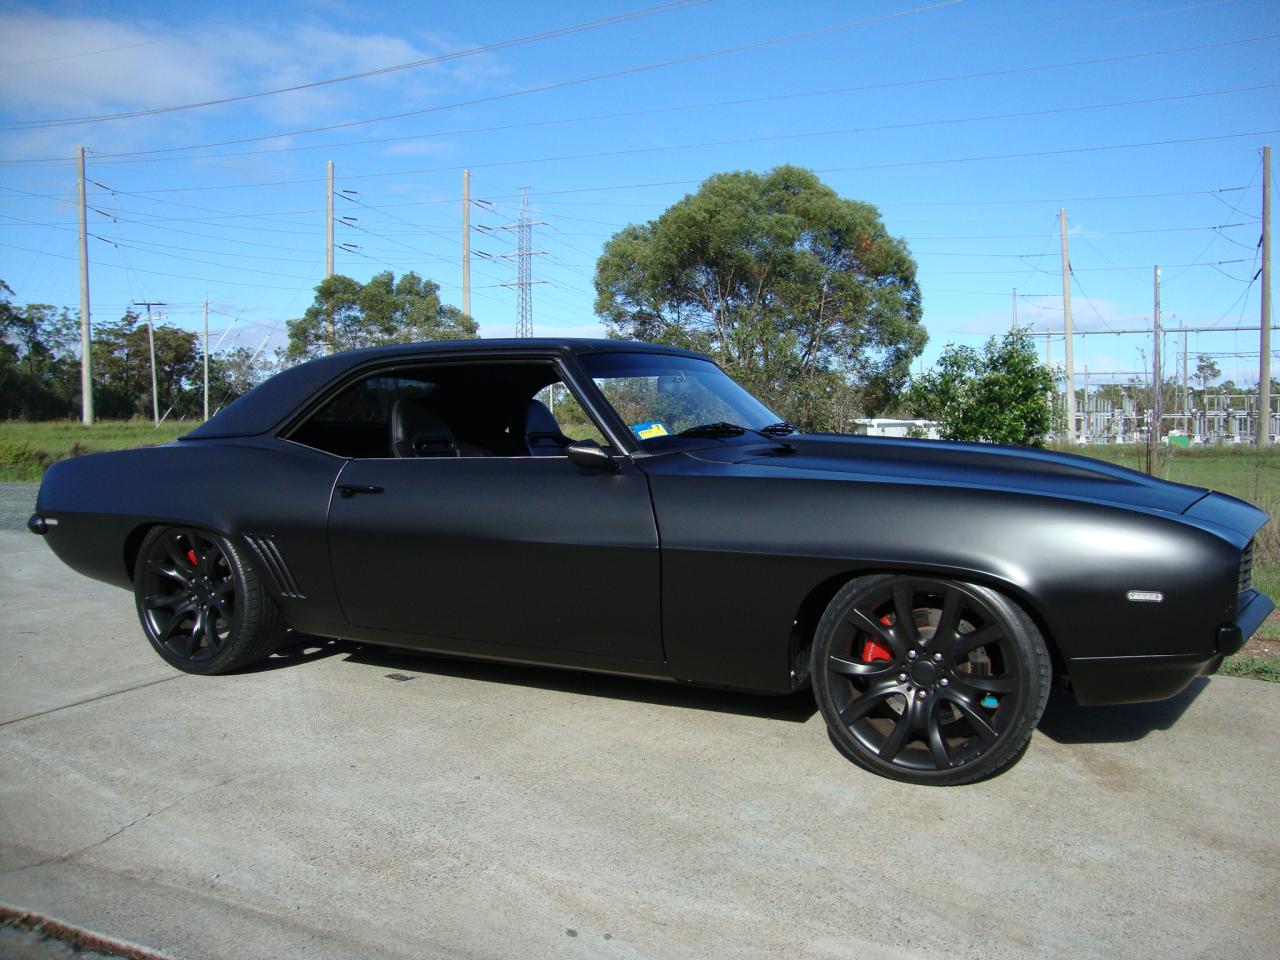 Черный шеви. Шевроле Камаро 1969. Chevrolet Camaro SS 1969 черный. Chevrolet Camaro SS 1969. Камаро СС 1969 черный.